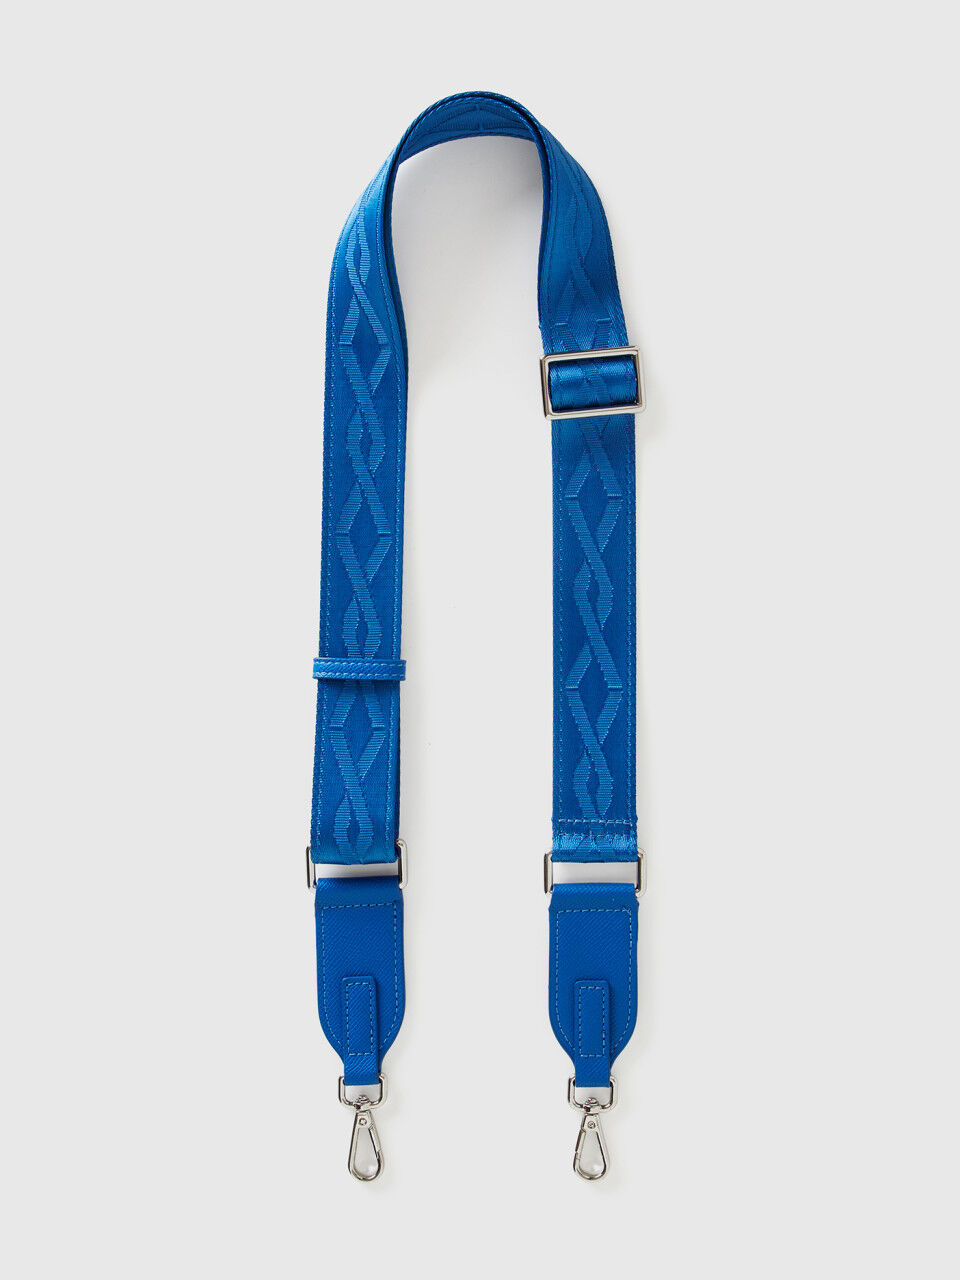 Jacquard shoulder strap for bags